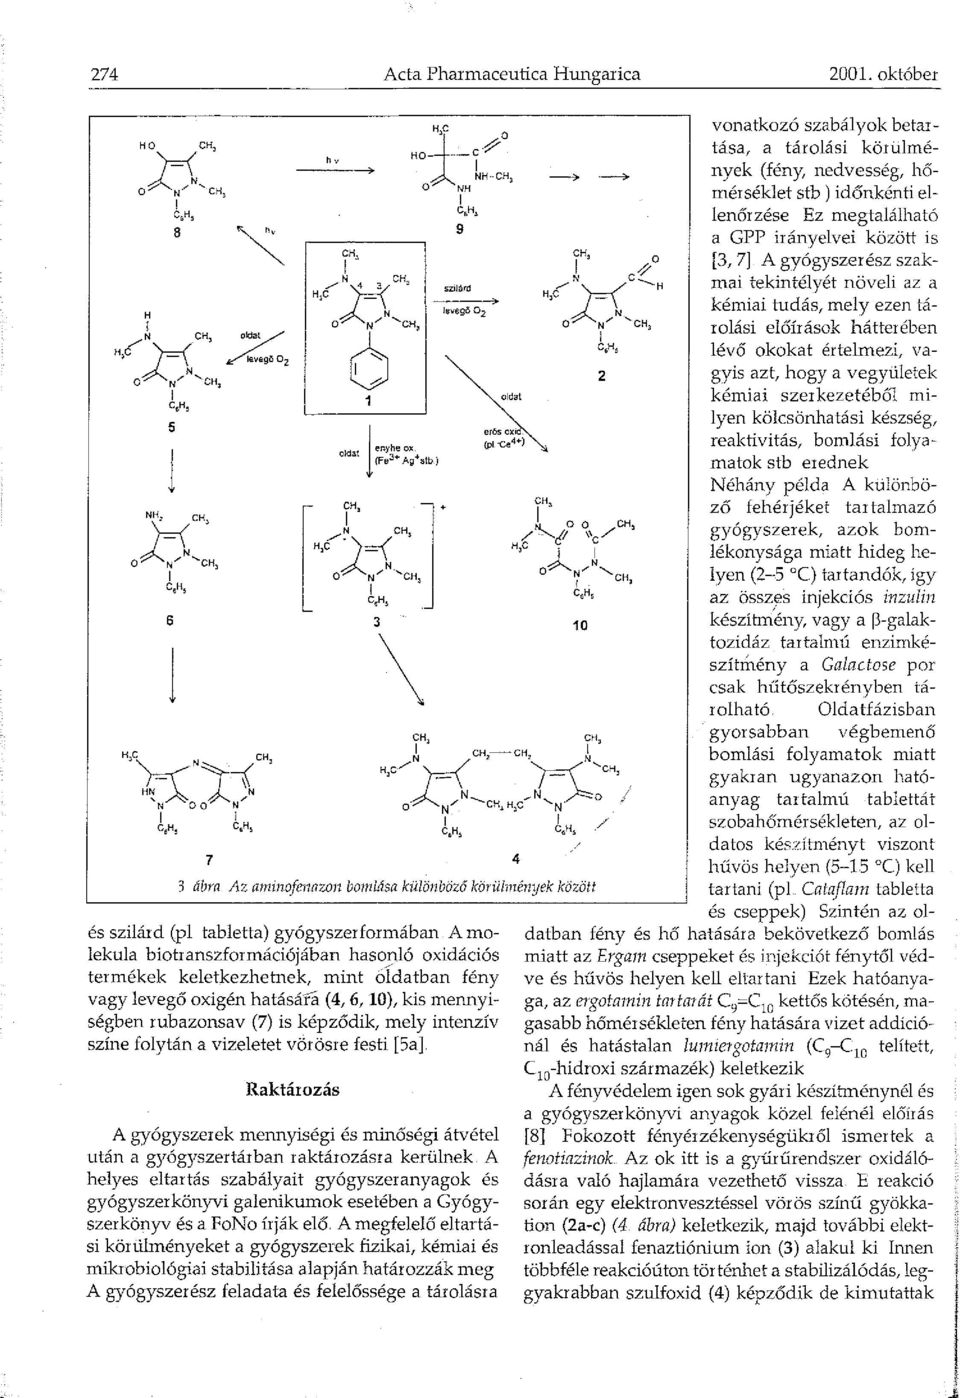 gyógyszerformában A molekula biotranszformációjában hasopló oxidációs termékek keletkezhetnek, mint oldatban fény vagy levegő oxigén hatására (4, 6, 0), kis mennyiségben rubazonsav (7) is képződik,